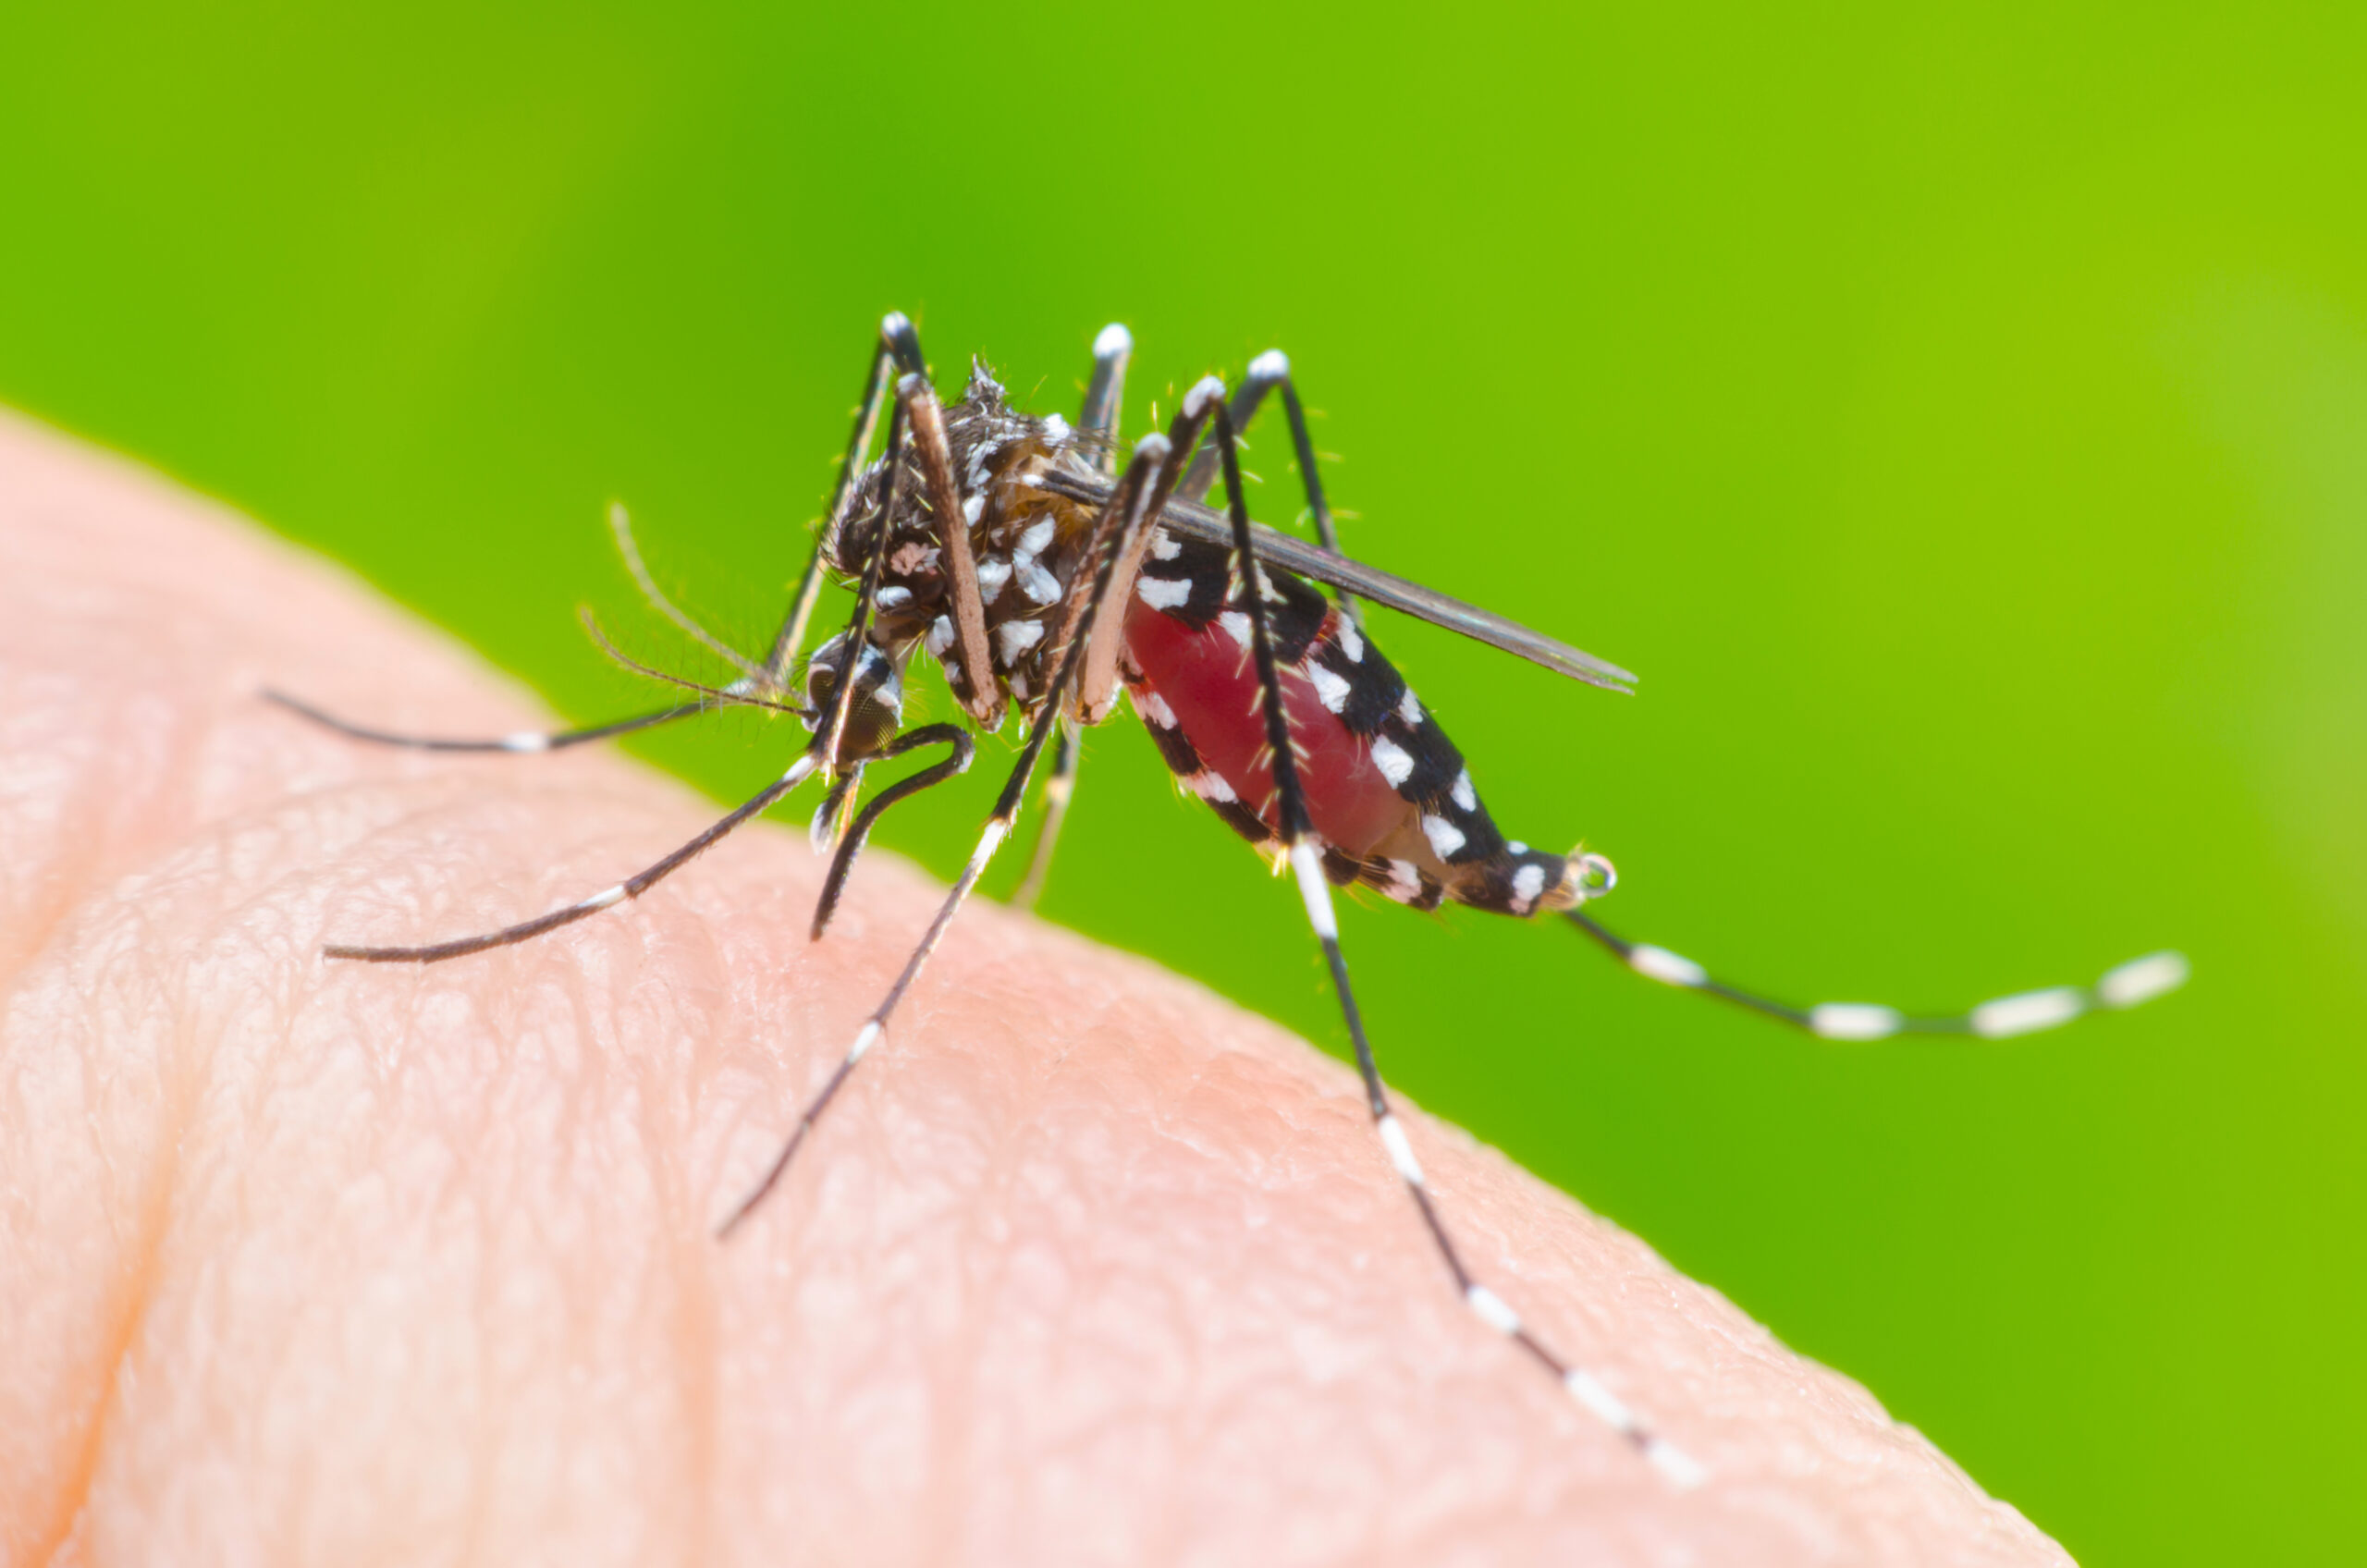 Myg der stikker i person, som kan blive smittet med dengue feber